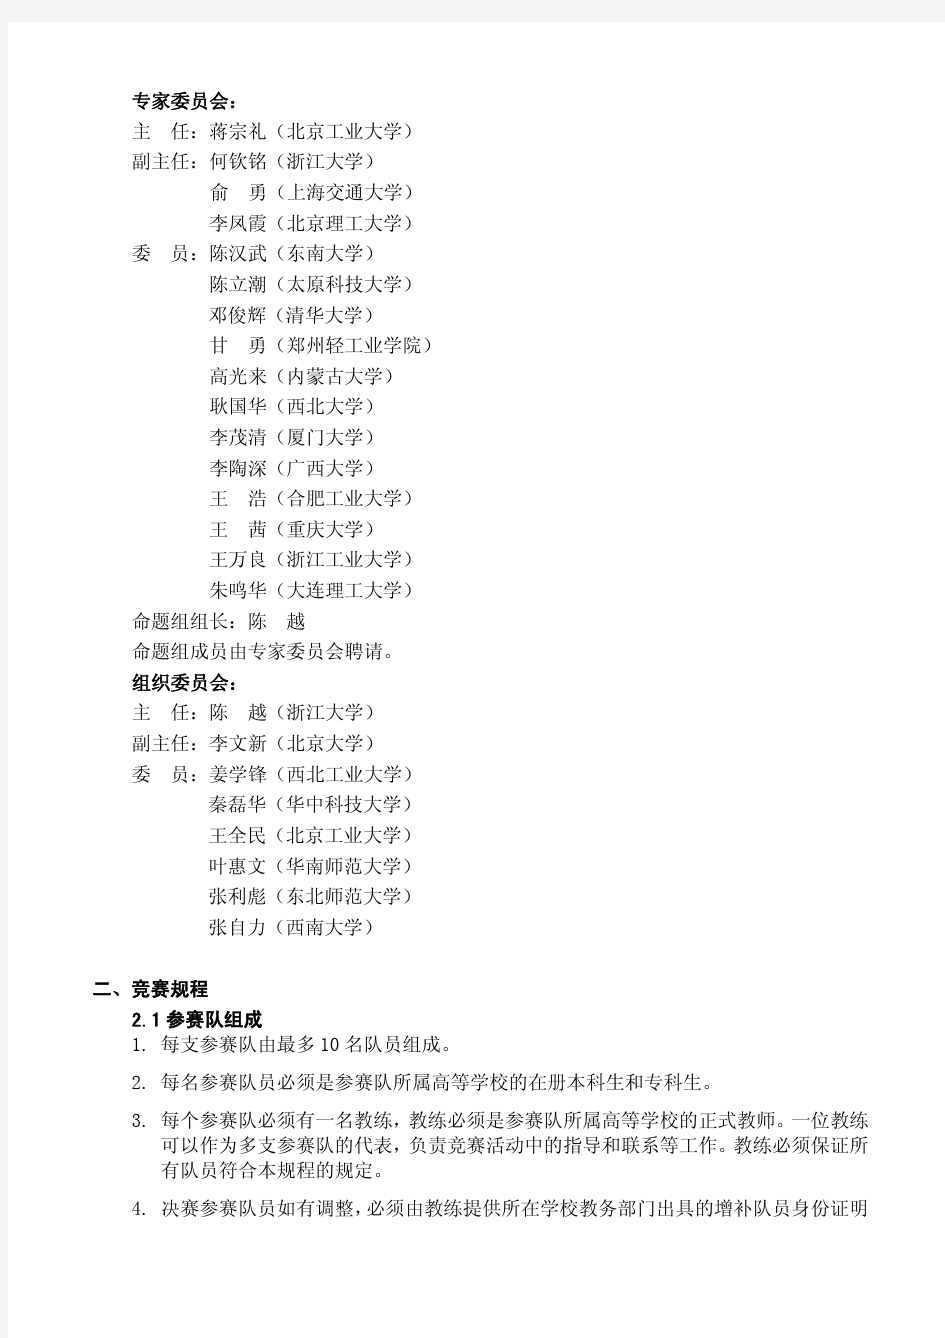 中国高校计算机大赛-团体程序设计天梯赛决赛通知(20160620)